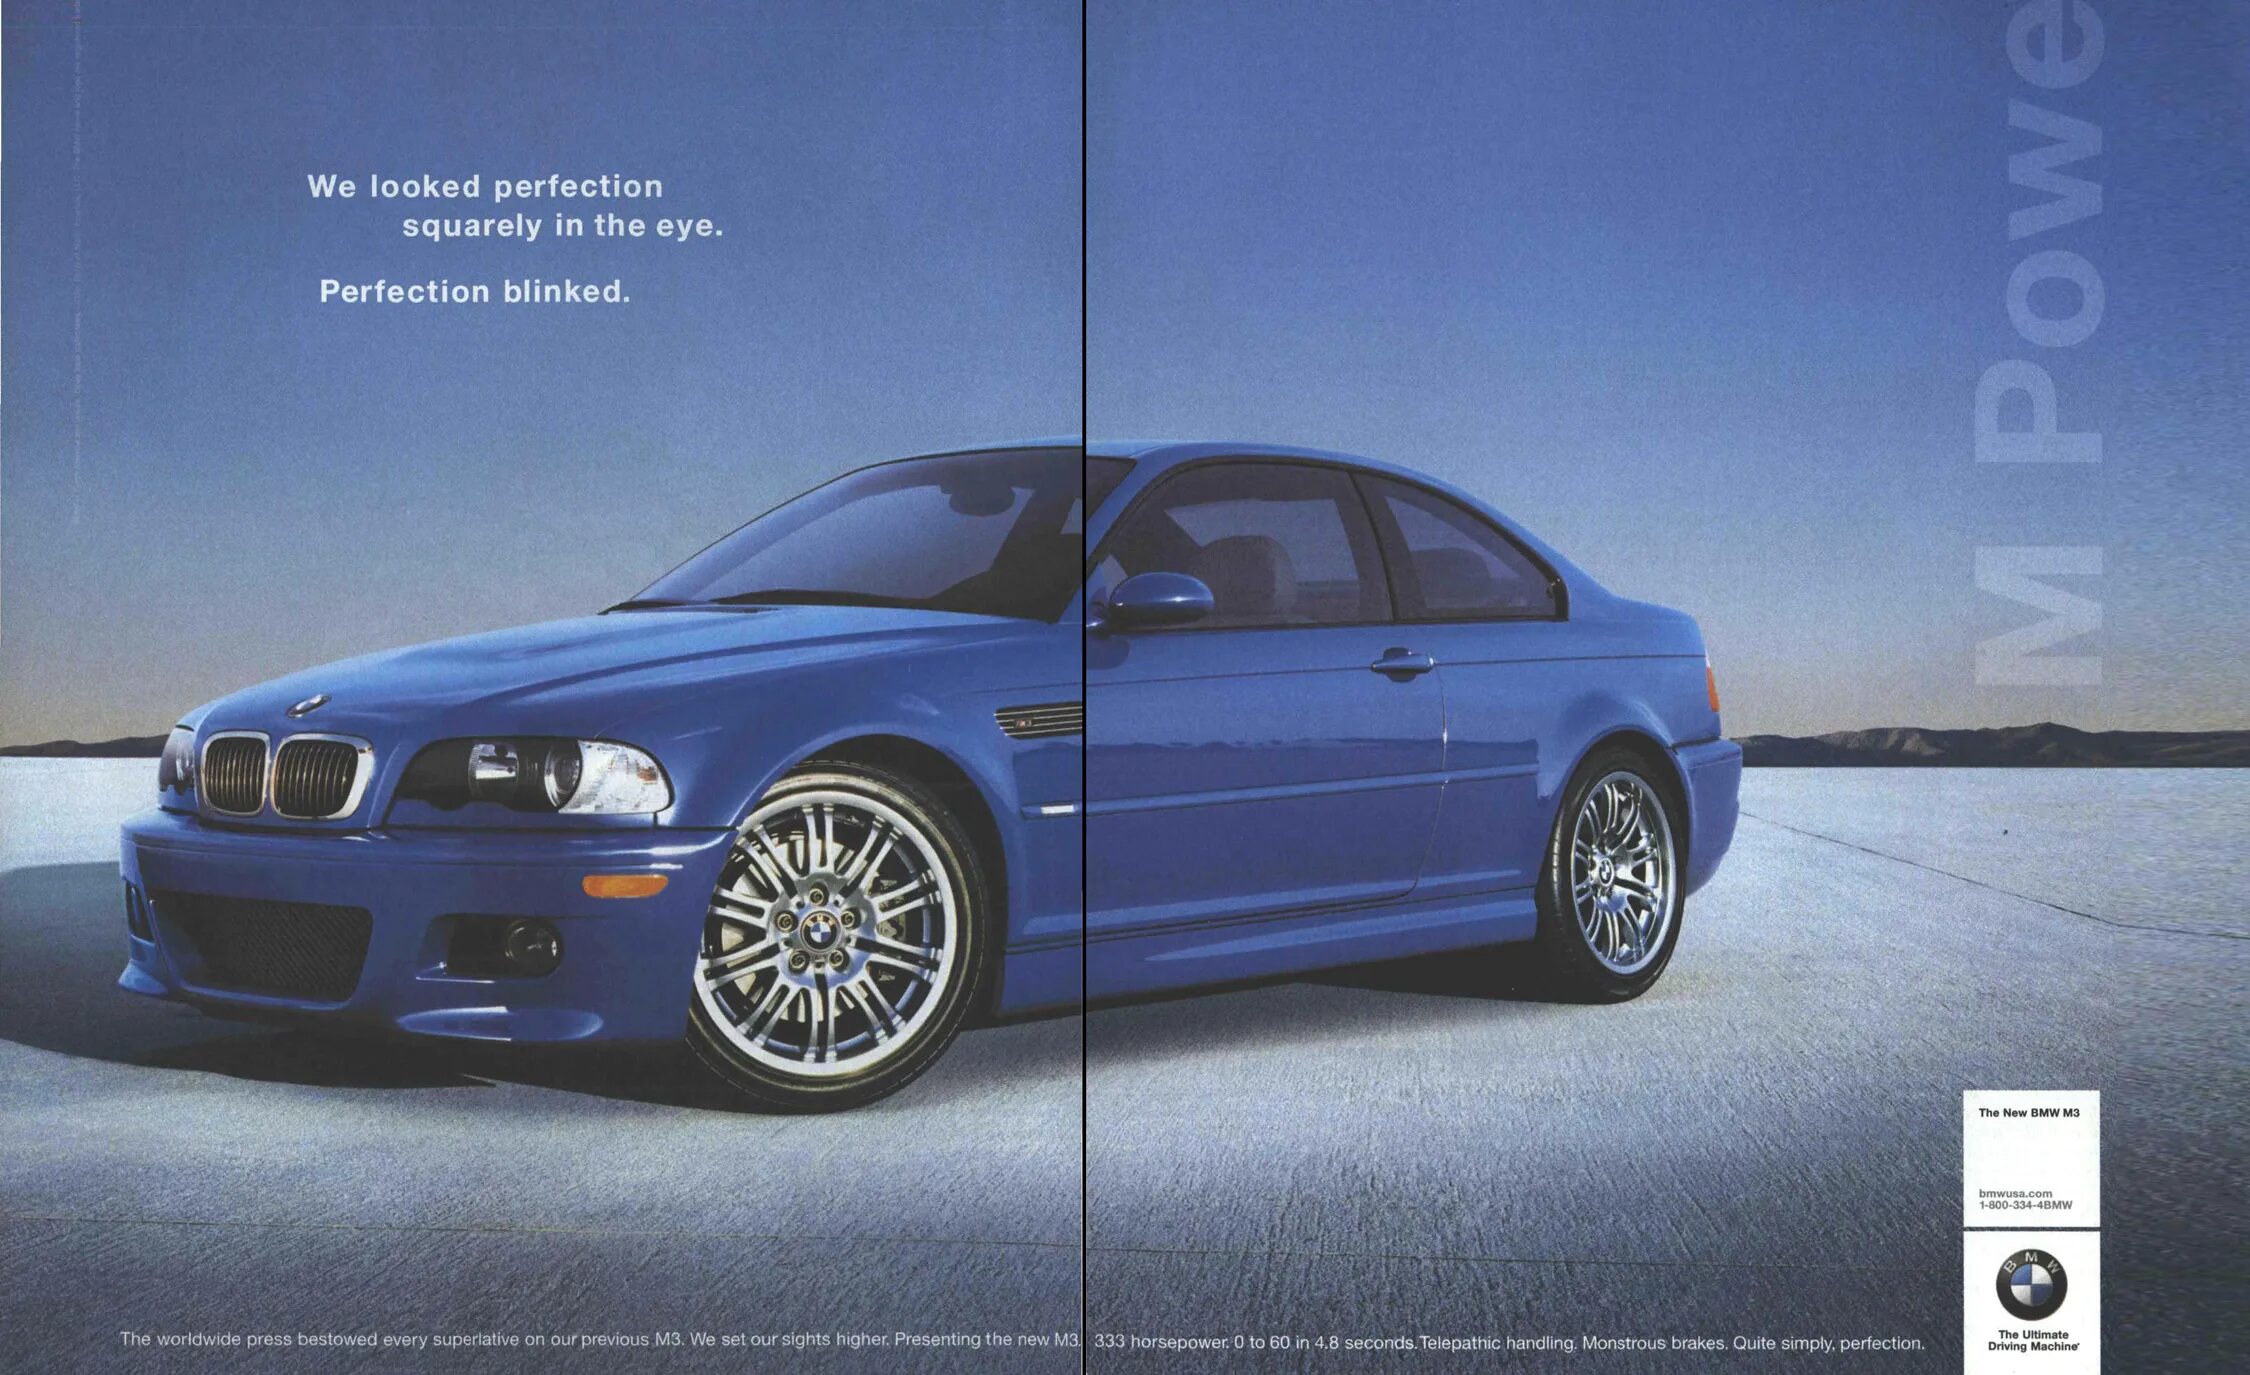 2000 х 8. 2000 Год реклама автомобиля. Реклама авто рекламы 2000. Реклама 2000-2010. Реклама из 2000.